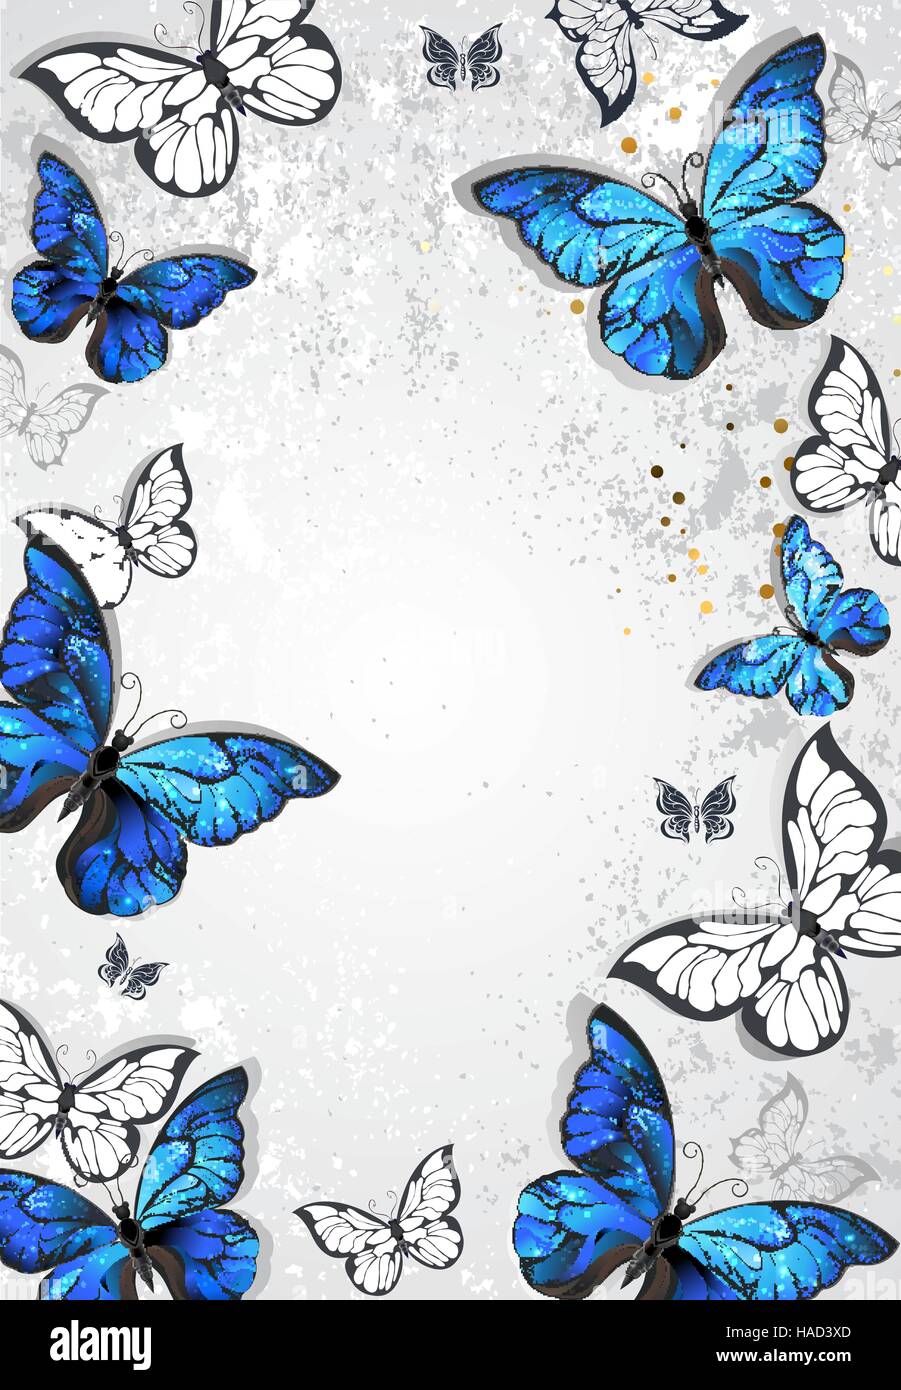 Với khung hình với những chú bướm morpho xanh thực tế trên nền xám văn bản, bạn sẽ cảm thấy như đang đặt chân tới nơi thiên đường của những con bướm tuyệt đẹp. Hãy nhấn play và đắm mình trong vẻ đẹp của chúng!